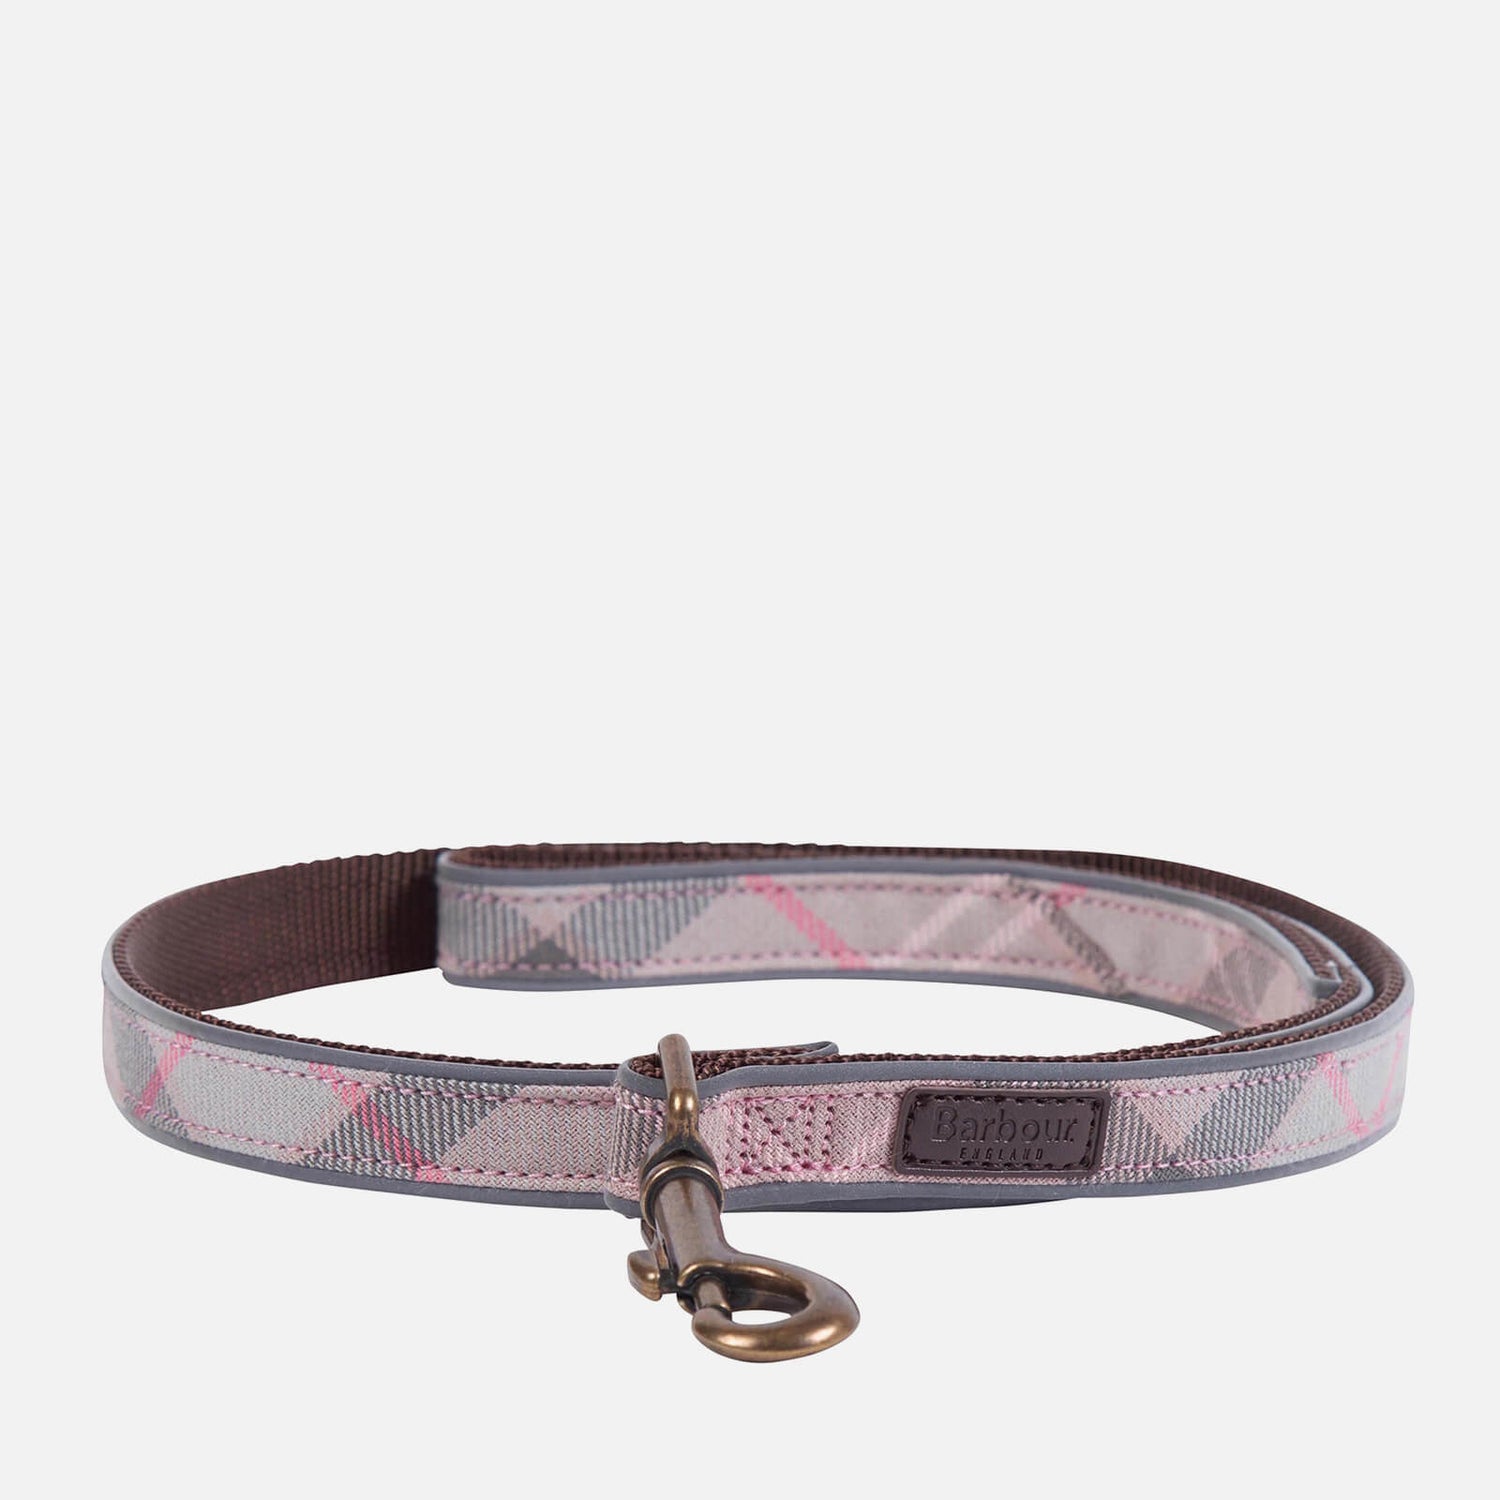 Barbour Reflective Tartan Dog Collar - Taupe/Pink Tartan - S